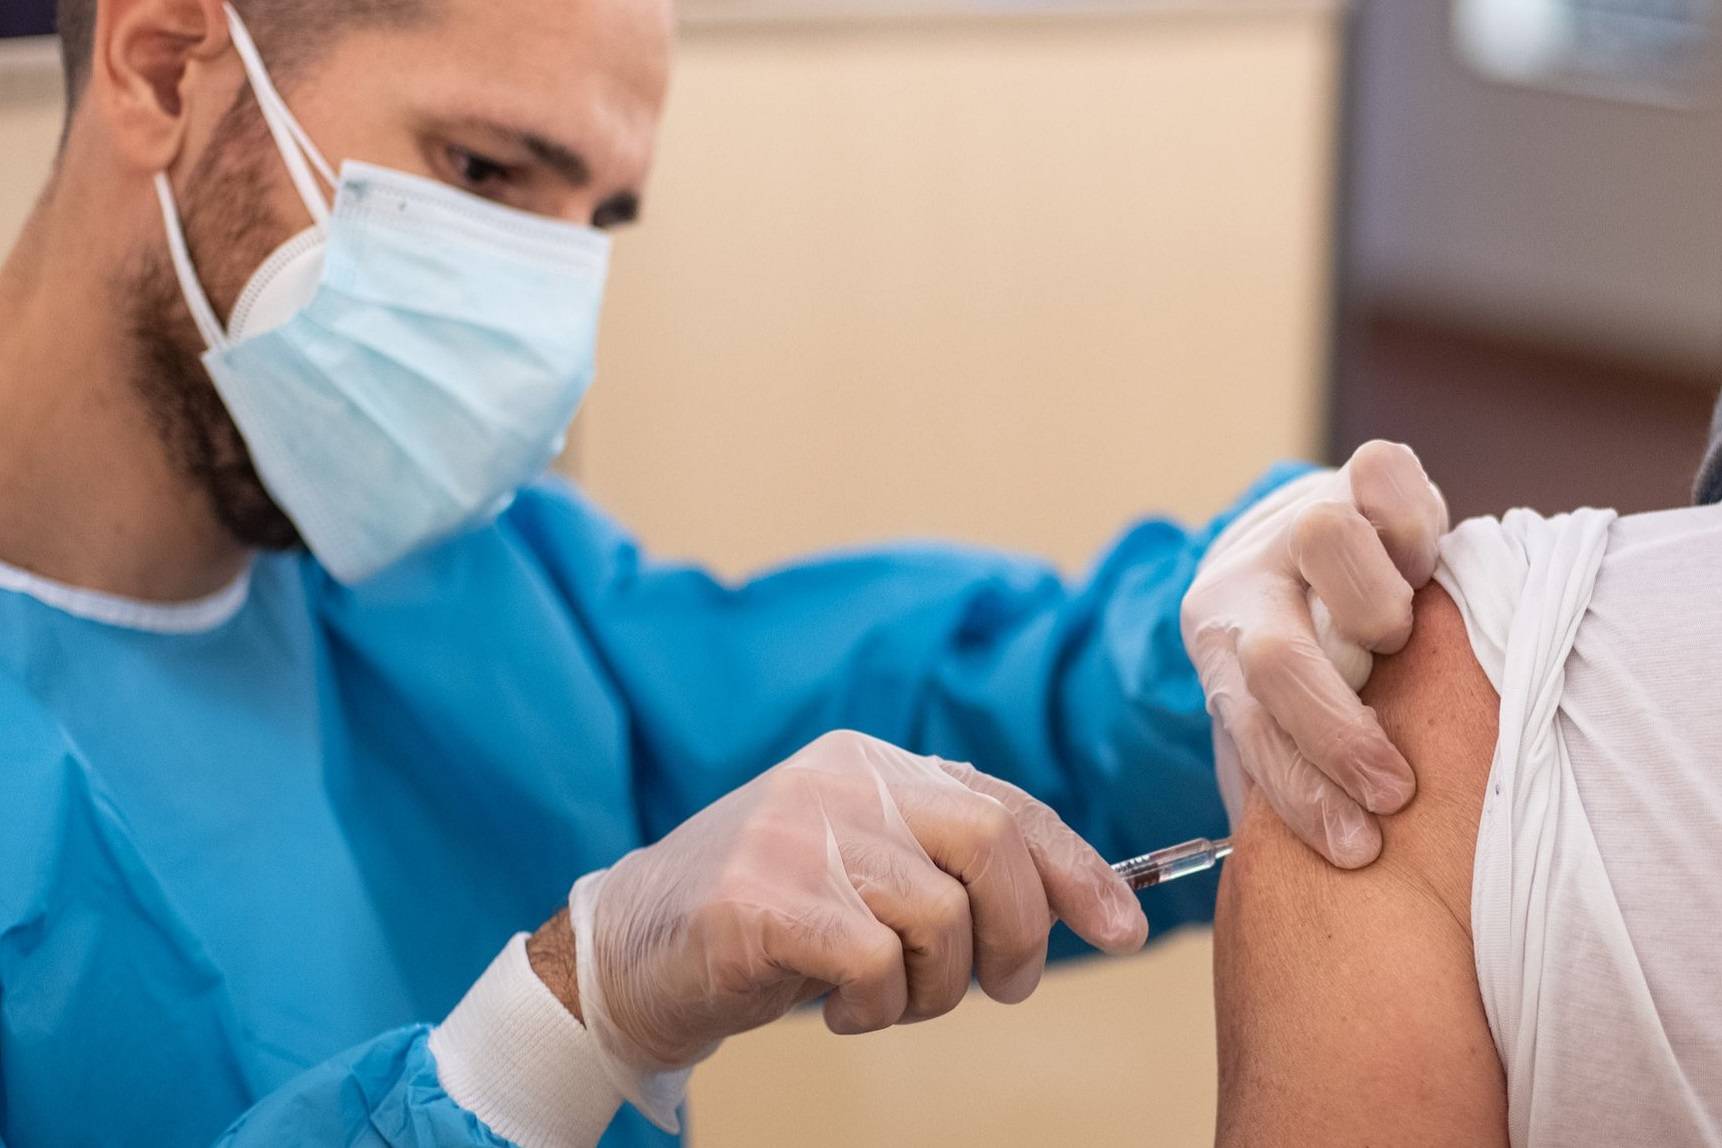 اگر واکسن کووید را دریافت کنید، هنوز ممکن است دیگران را عفونی کنید؟